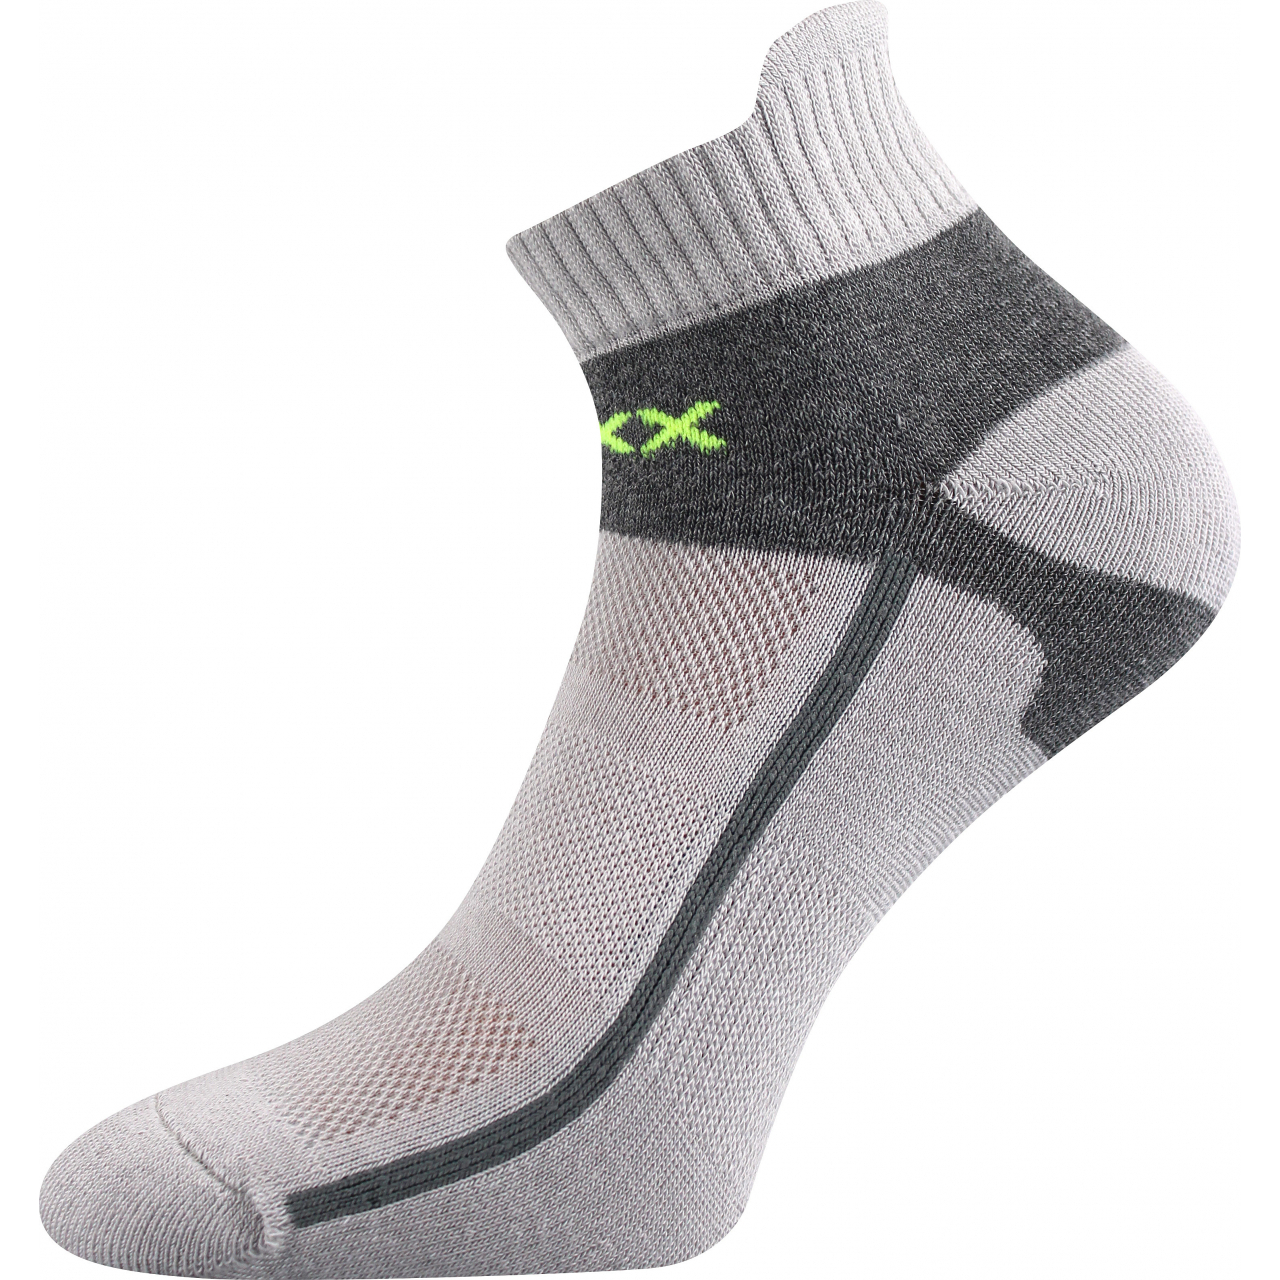 Ponožky sportovní Voxx Glowing - světle šedé-šedé, 43-46